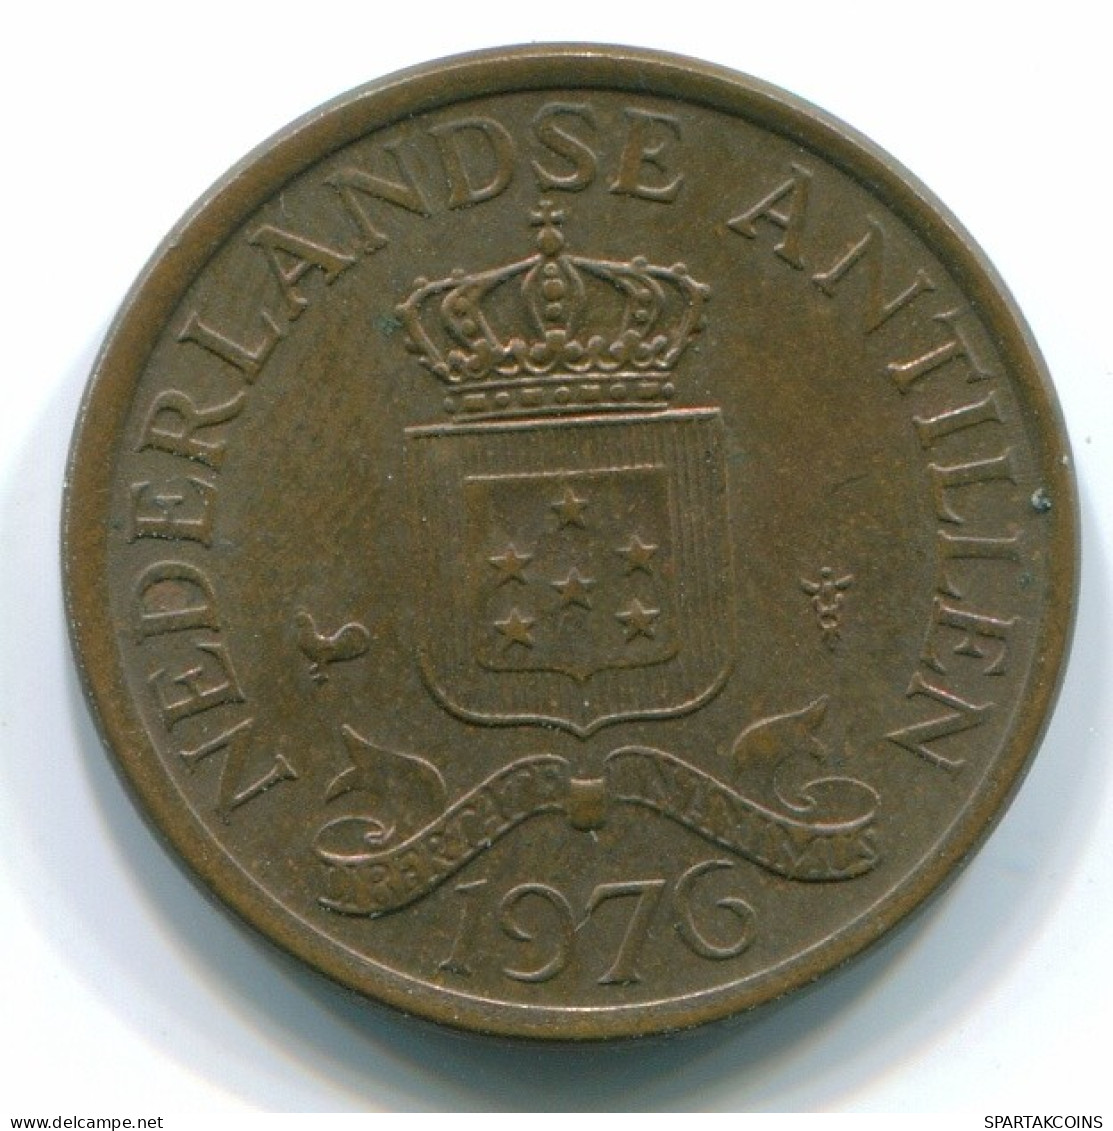 1 CENT 1976 NETHERLANDS ANTILLES Bronze Colonial Coin #S10697.U.A - Antilles Néerlandaises